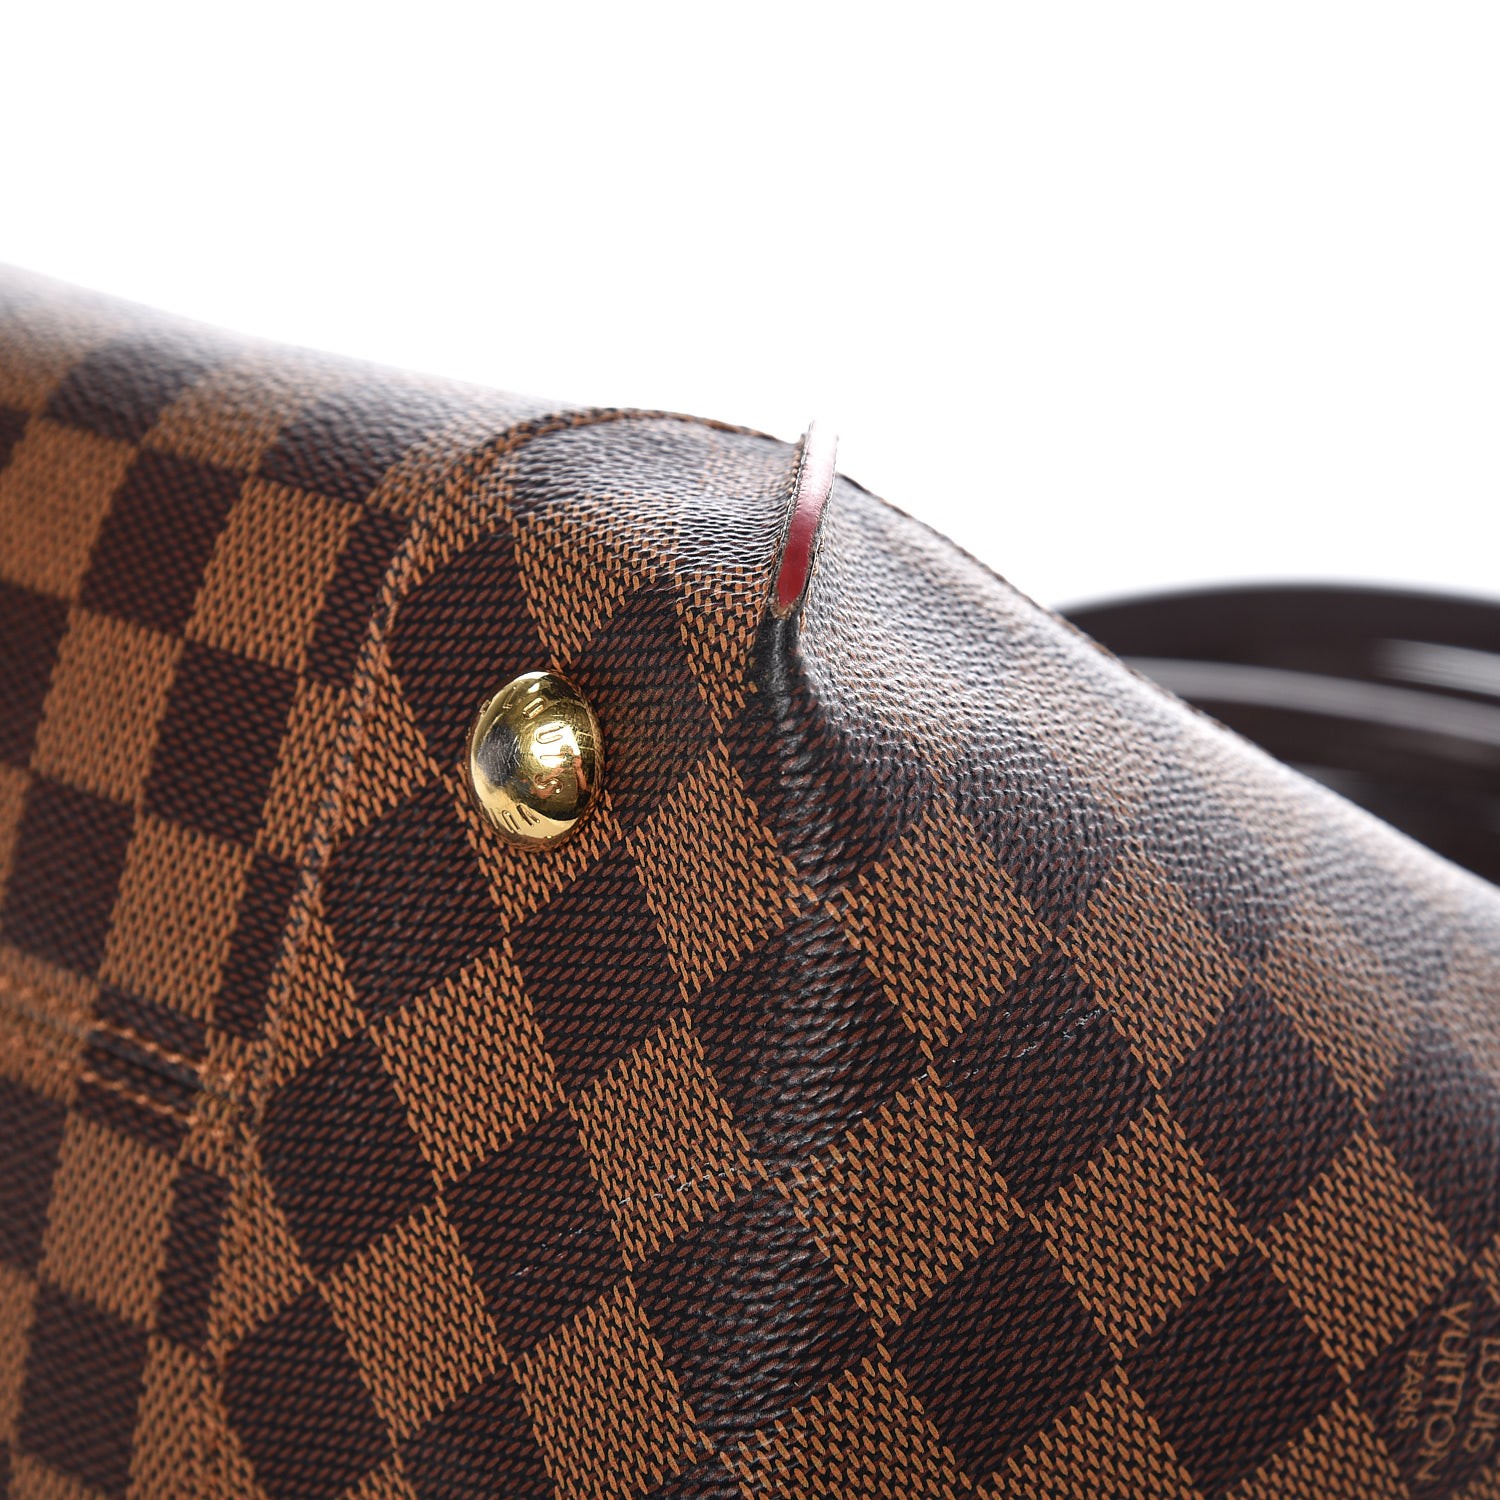 Louis Vuitton Caissa PM Damier Rose Ballerine Shoulder Bag